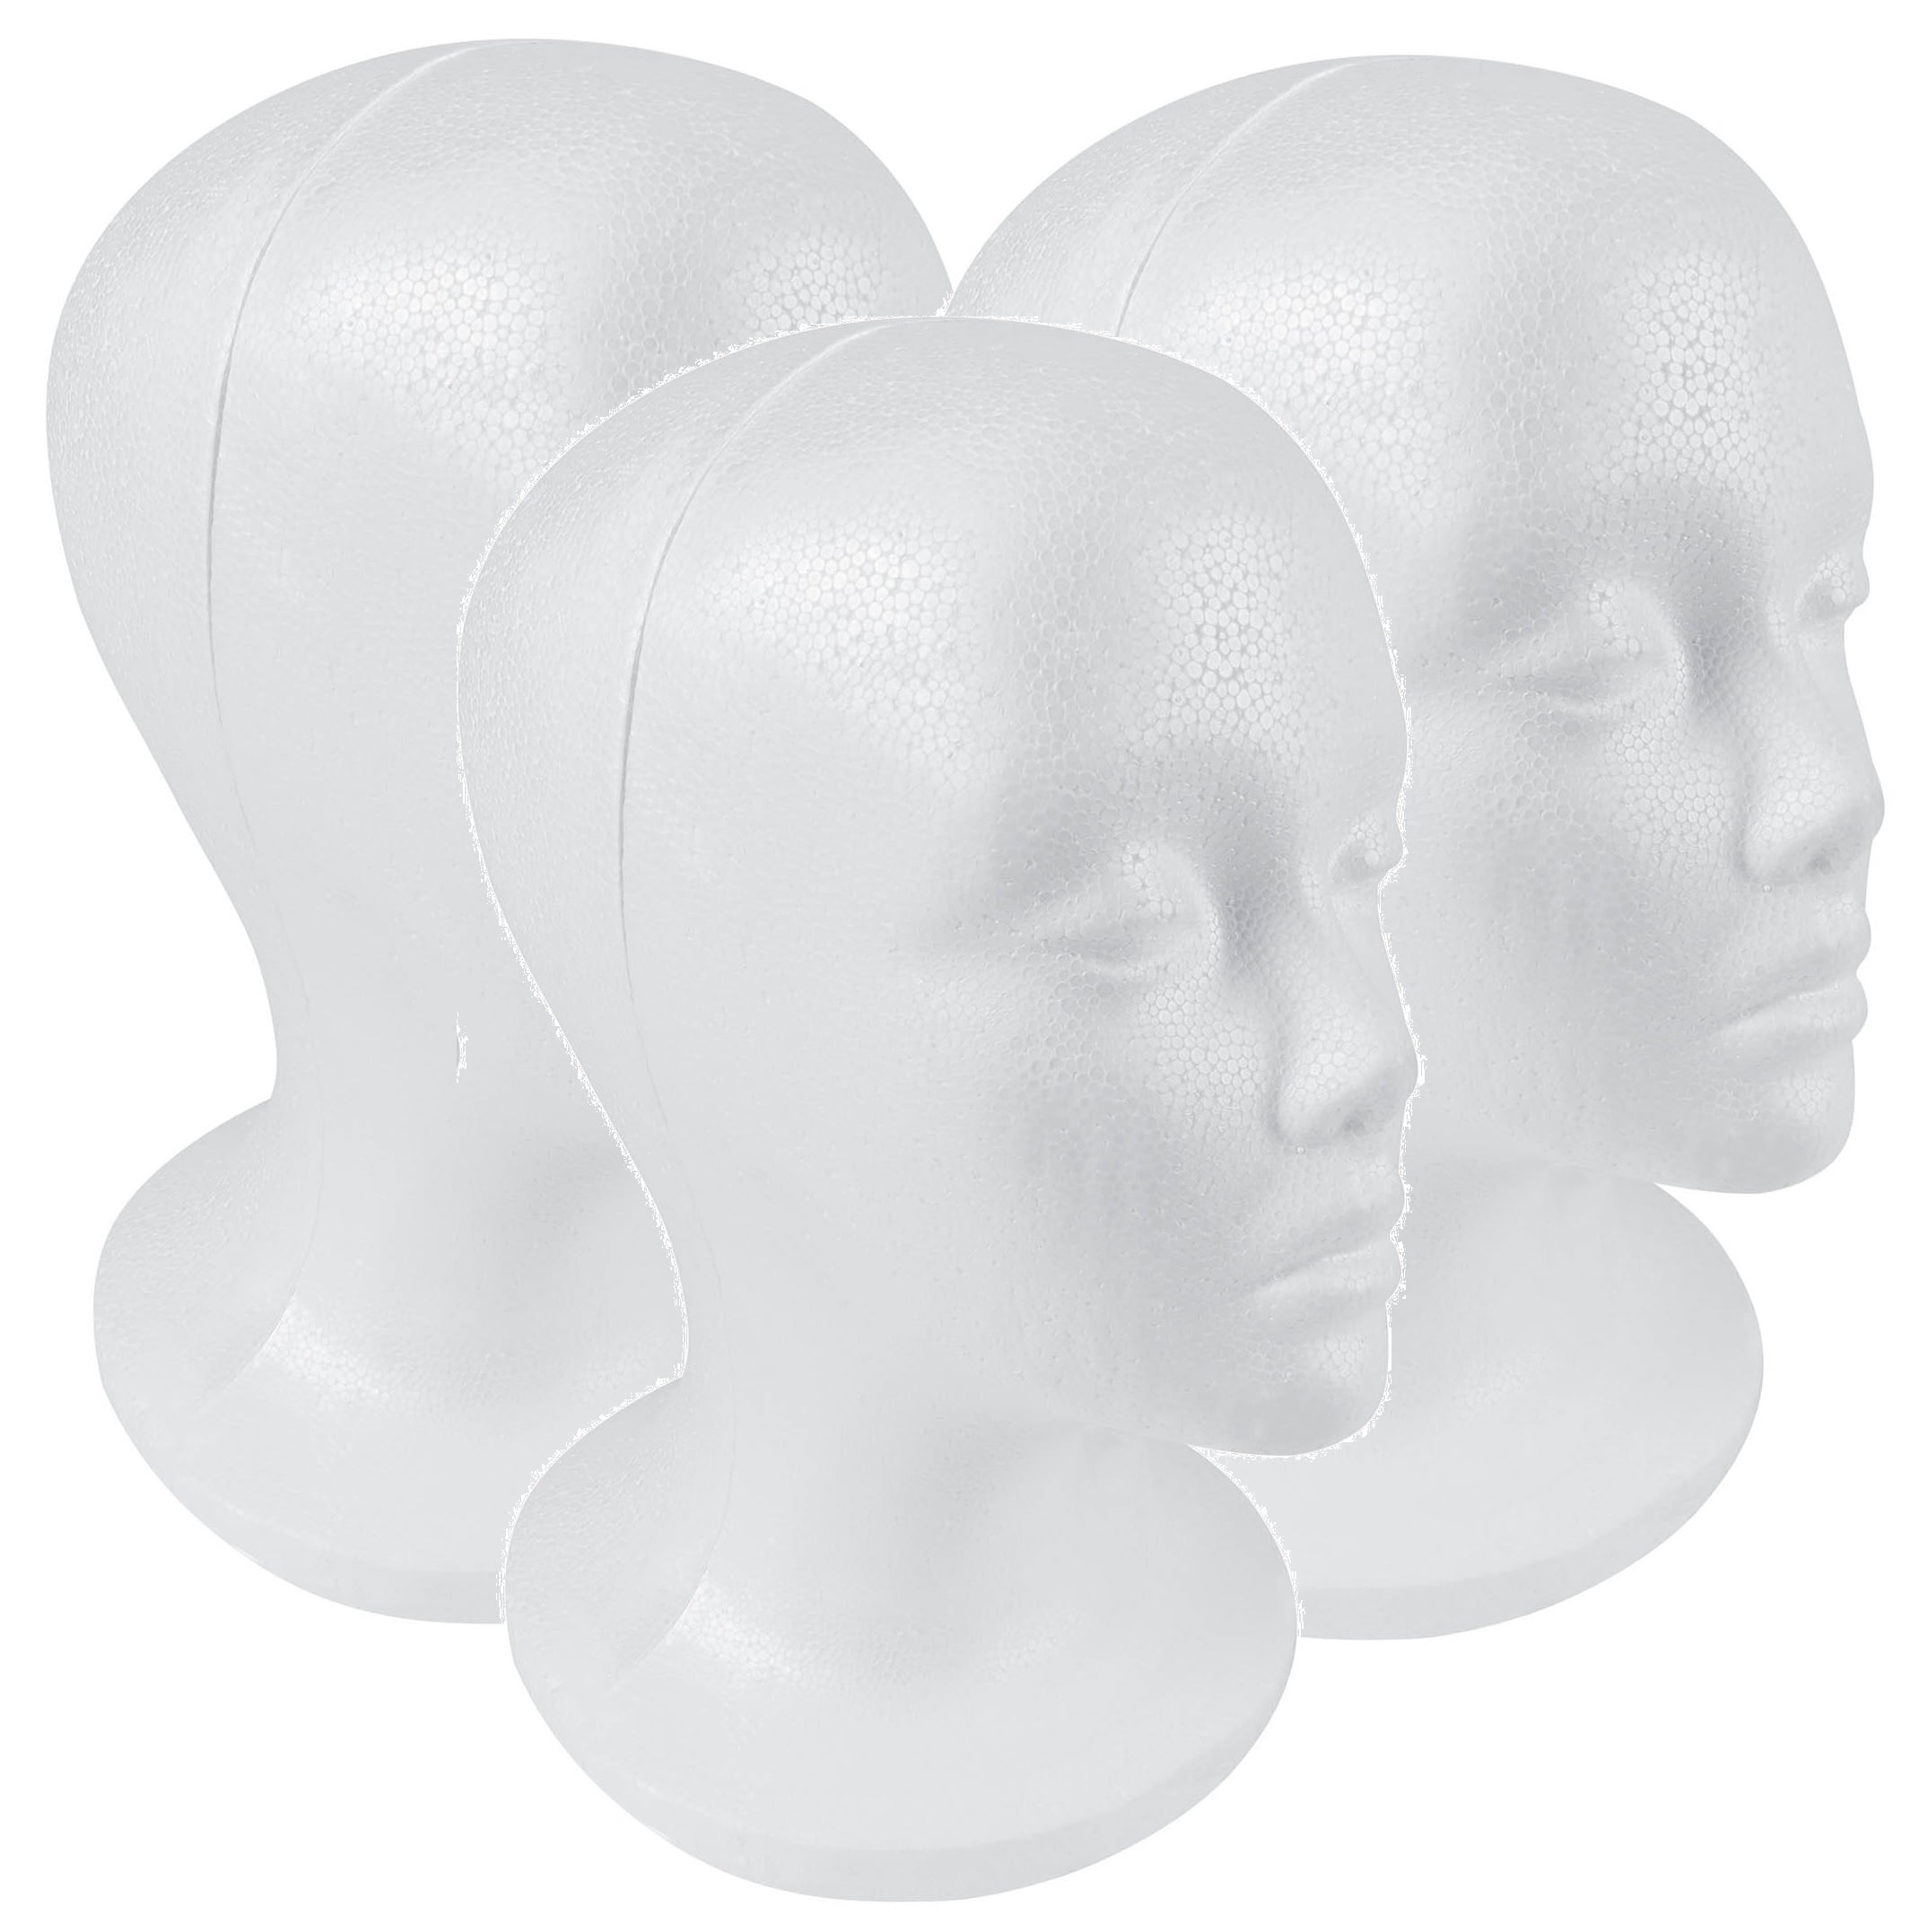 Plussign Soft Styrofoam Foam Mannequin Head For Making Wigs 20.5